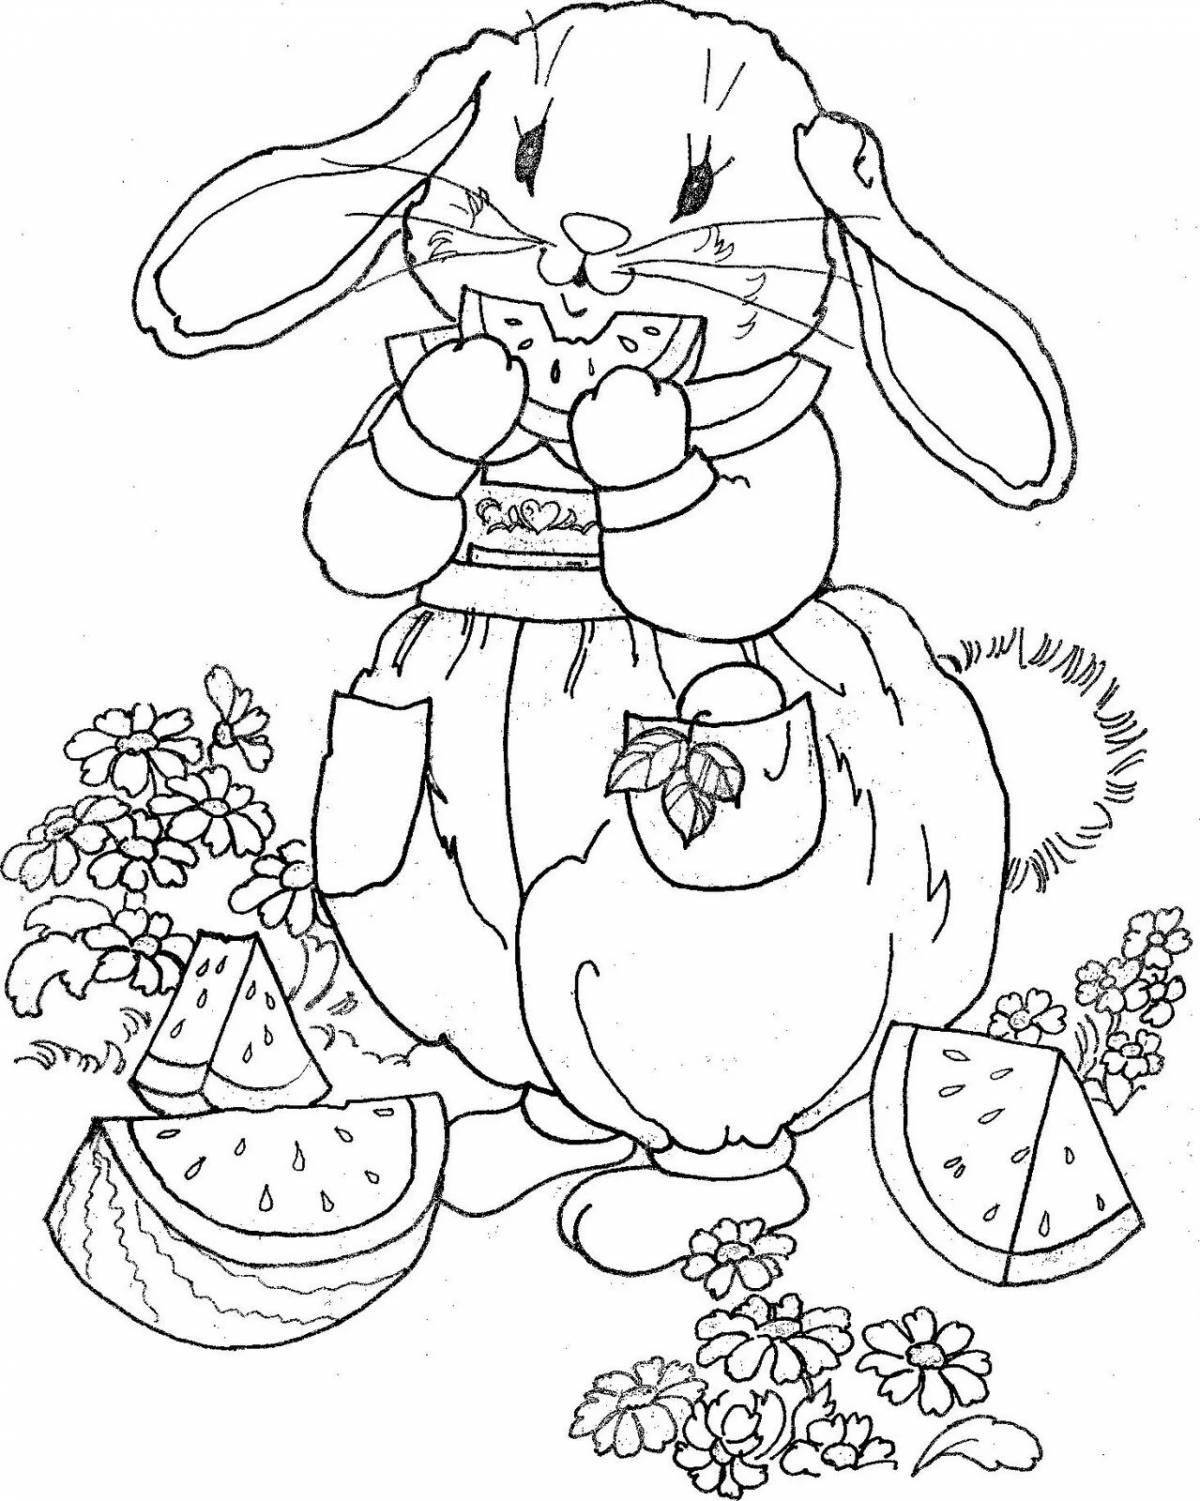 Adorable bunny Christmas coloring book